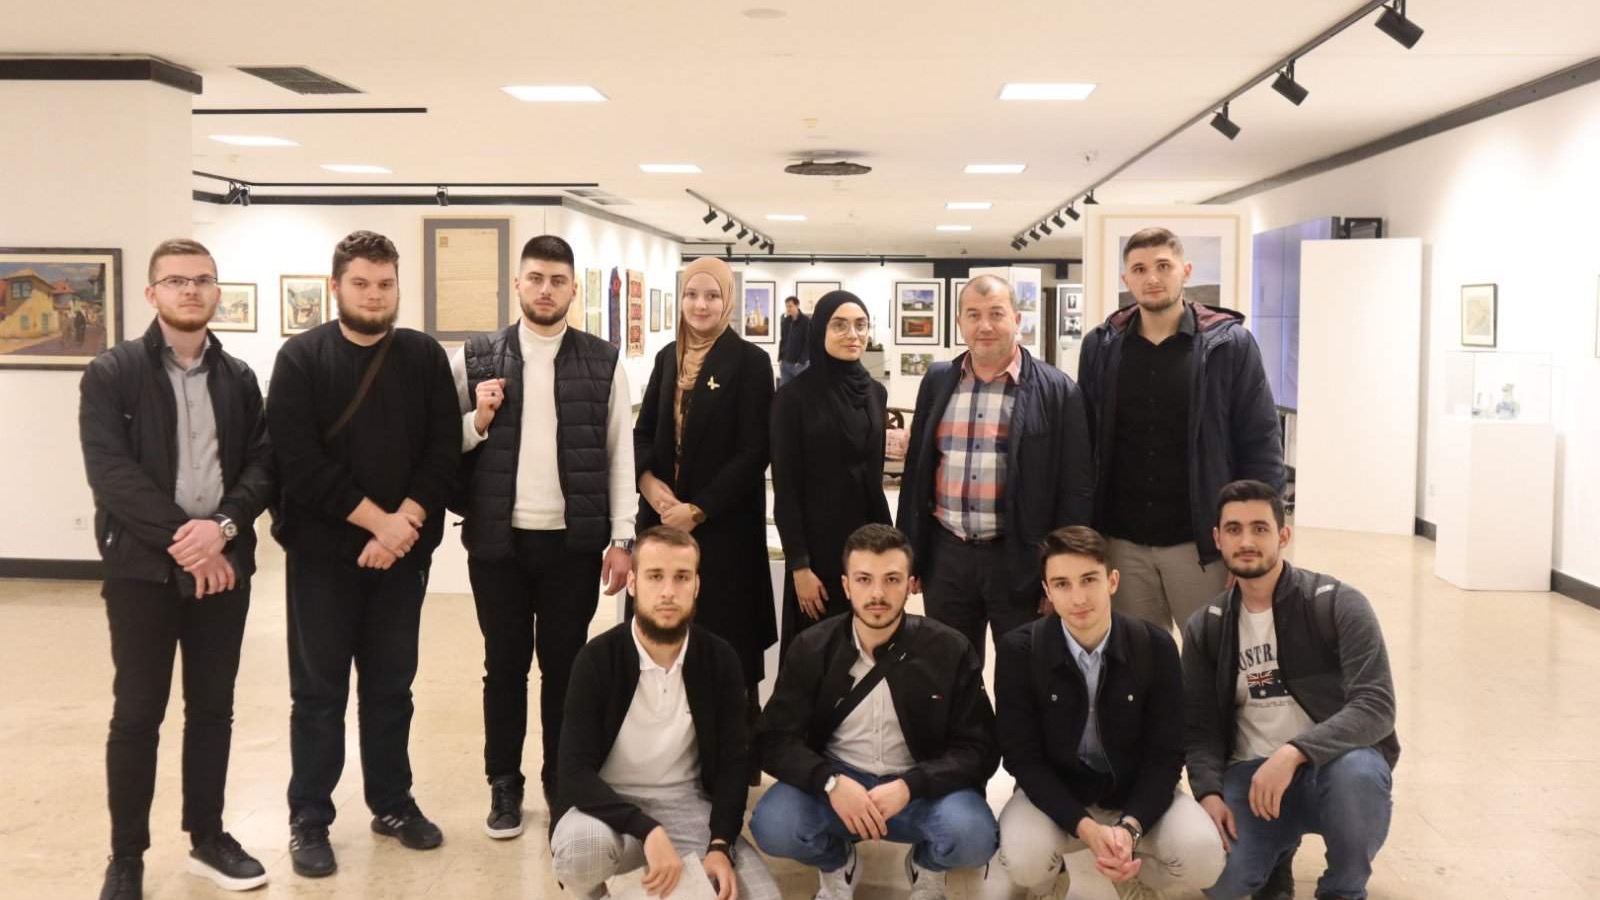 Profesori i studenti Fakulteta islamskih nauka u Sarajevu posjetili izložbu Pod nebom vedre vjere – Islam i Evropa u iskustvu Bosne